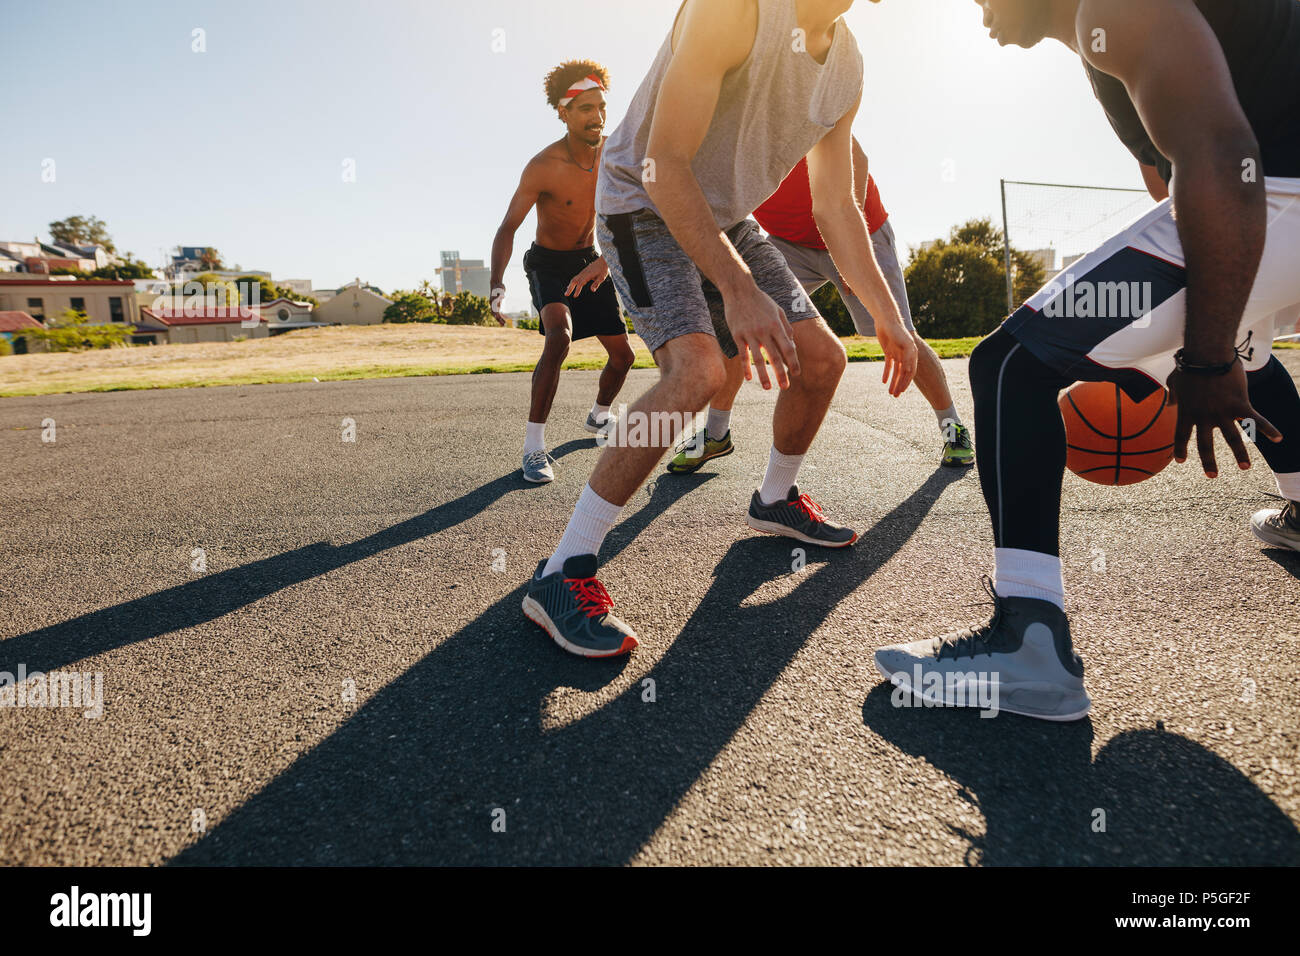 Gli uomini la riproduzione di gioco di basket in una giornata di sole. Gli uomini praticano abilità di basket in area di gioco. Foto Stock